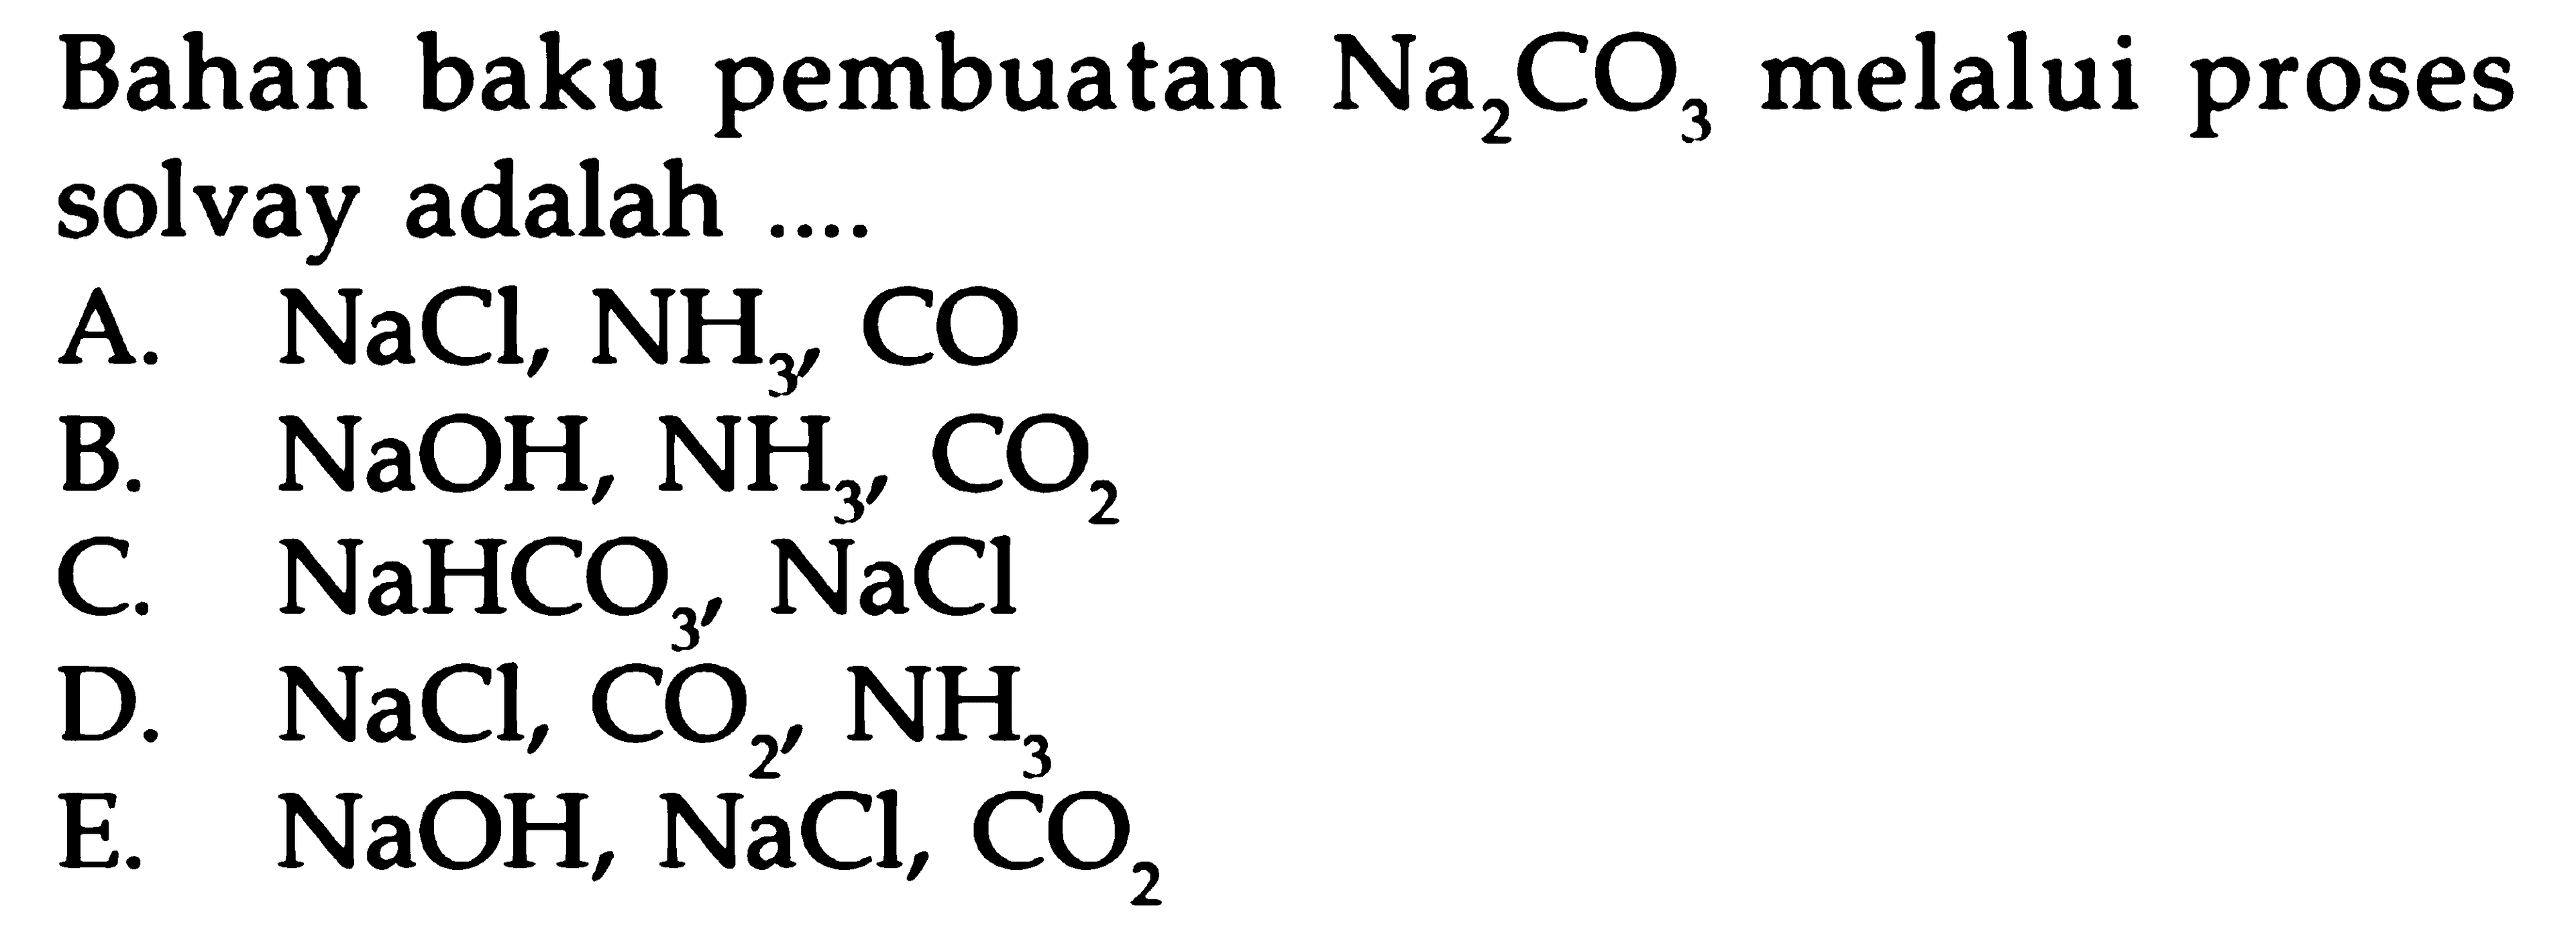 Bahan baku pembuatan NA2CO3 melalui proses solvay memisahkan